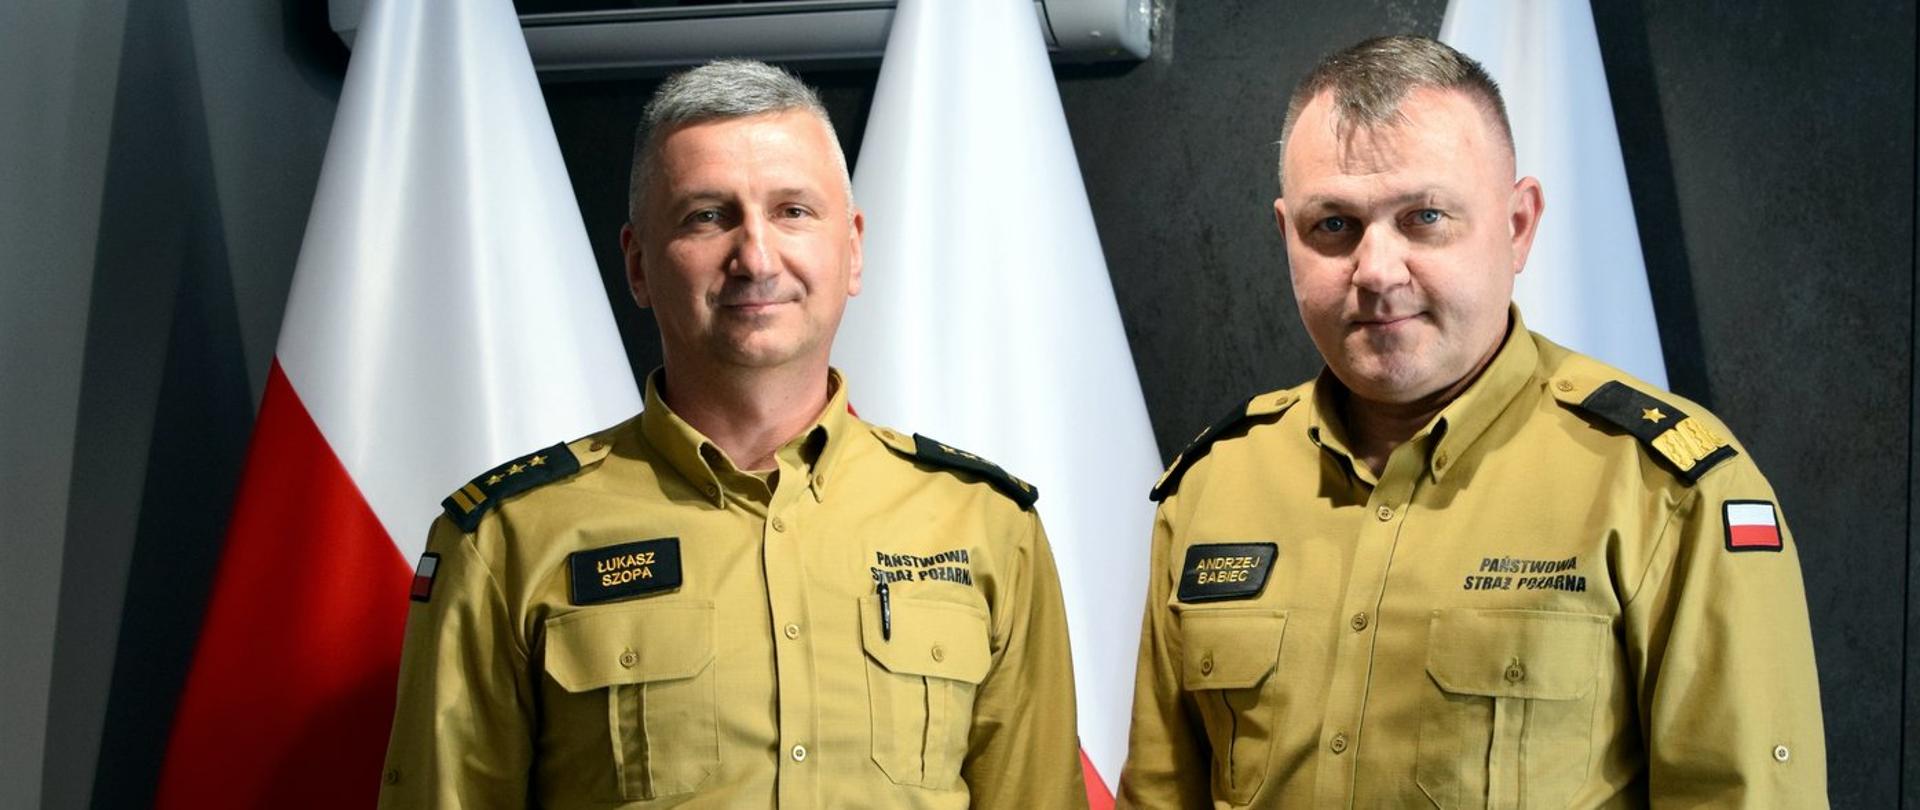 Zdjęcie zrobione wewnątrz pomieszczenia. Na zdjęciu dwóch oficerów Państwowej Straży Pożarnej. Za nimi ustawione są biało-czerwone flagi.